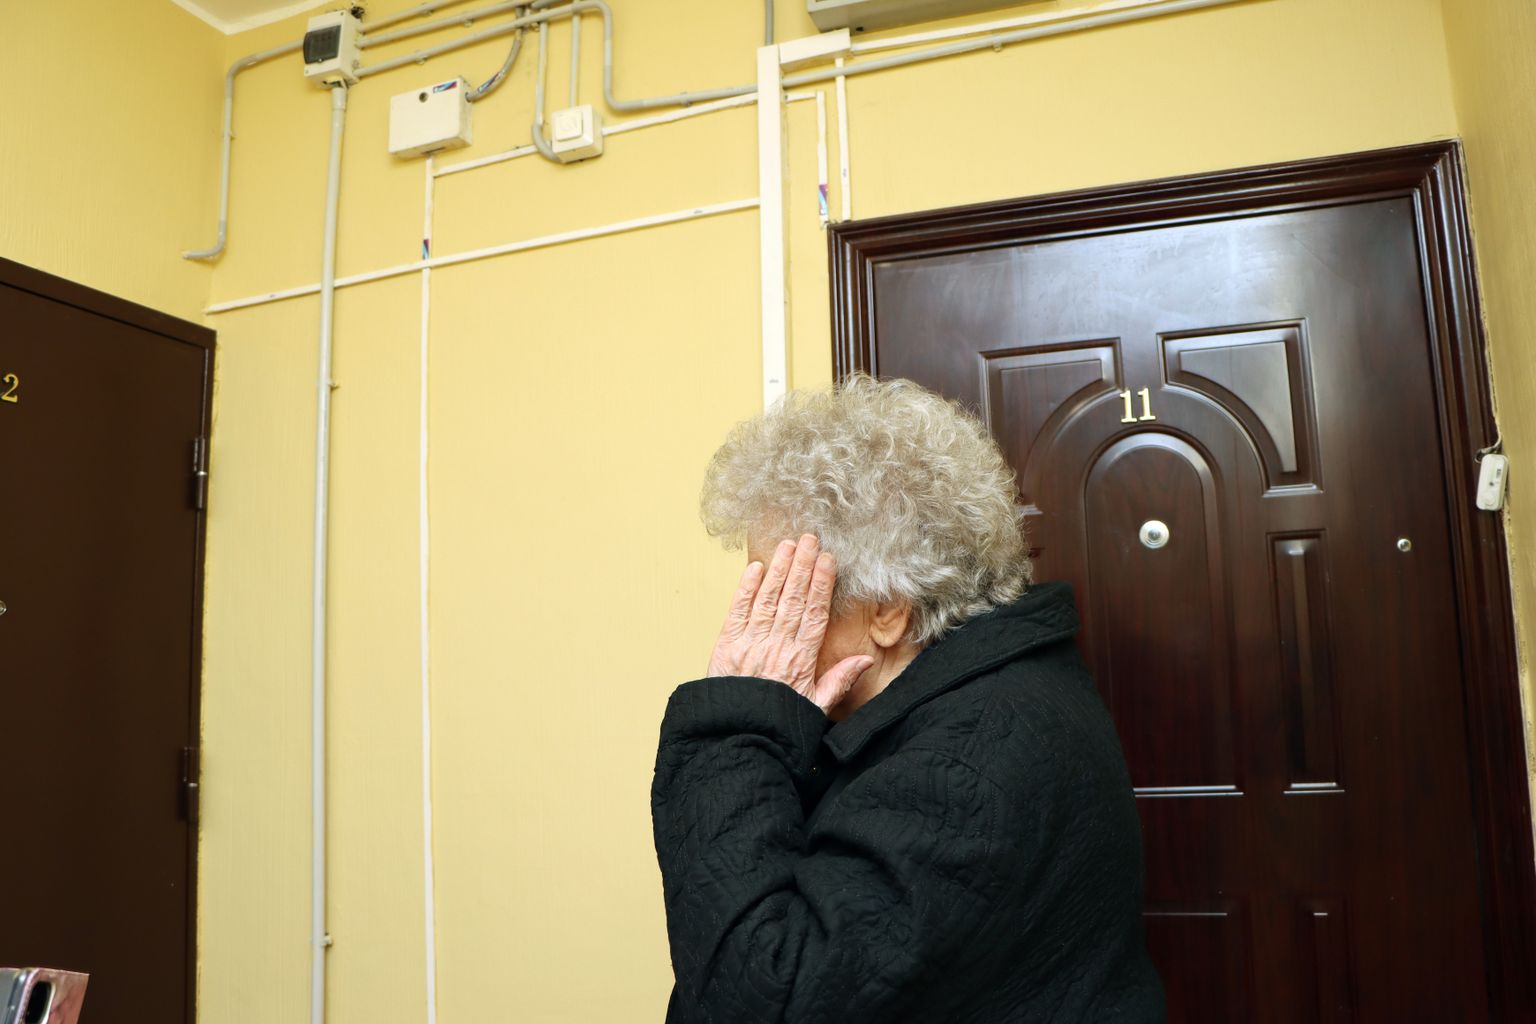 Соседка "проблемной" бабушки: "Переживаю за соседку, но тоже хочу покоя".